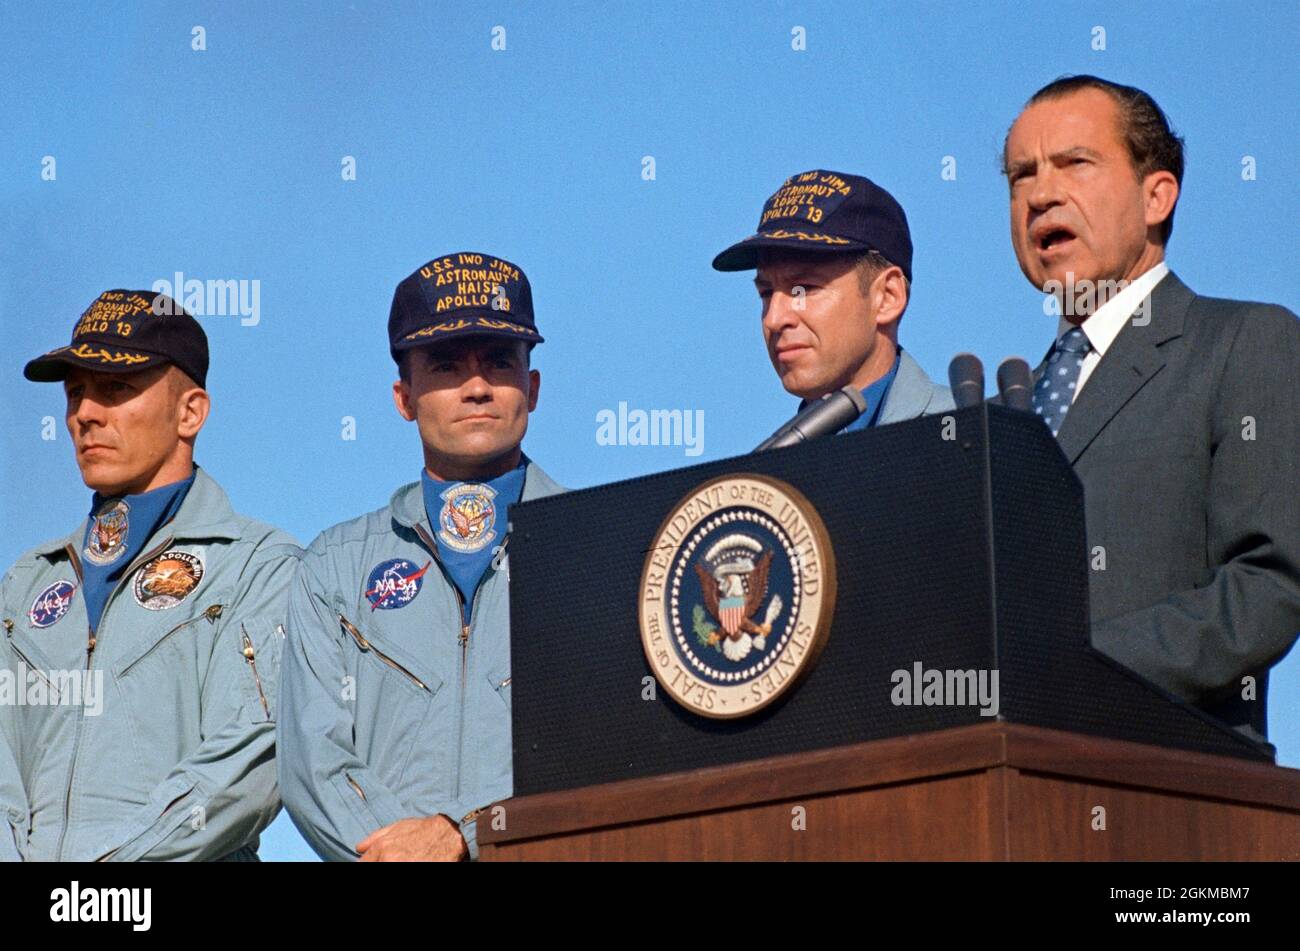 (19. April 1970) --- Präsident Richard M. Nixon spricht vor der Hickham Air Force Base, bevor er der Apollo 13-Besatzung die höchste zivile Auszeichnung des Landes überreicht. Die Präsidentenmedaille der Freiheit erhielten die Astronauten James A. Lovell Jr. (neben dem Chief Executive), Commander, John L. Swigert Jr. (links), Kommandomodulpilot, und Fred W. Haise Jr., Mondmodulpilot. Die Ehefrauen von Lovell und Haise und die Eltern von Swigert begleiteten den Präsidenten nach Hawaii. Der Apollo-13-Spritzwasserfall ereignete sich am 17. April 1970 um 12:07:44 Uhr (CST), etwa eineinhalb Tage vor der Hickam Air Force Base cer Stockfoto